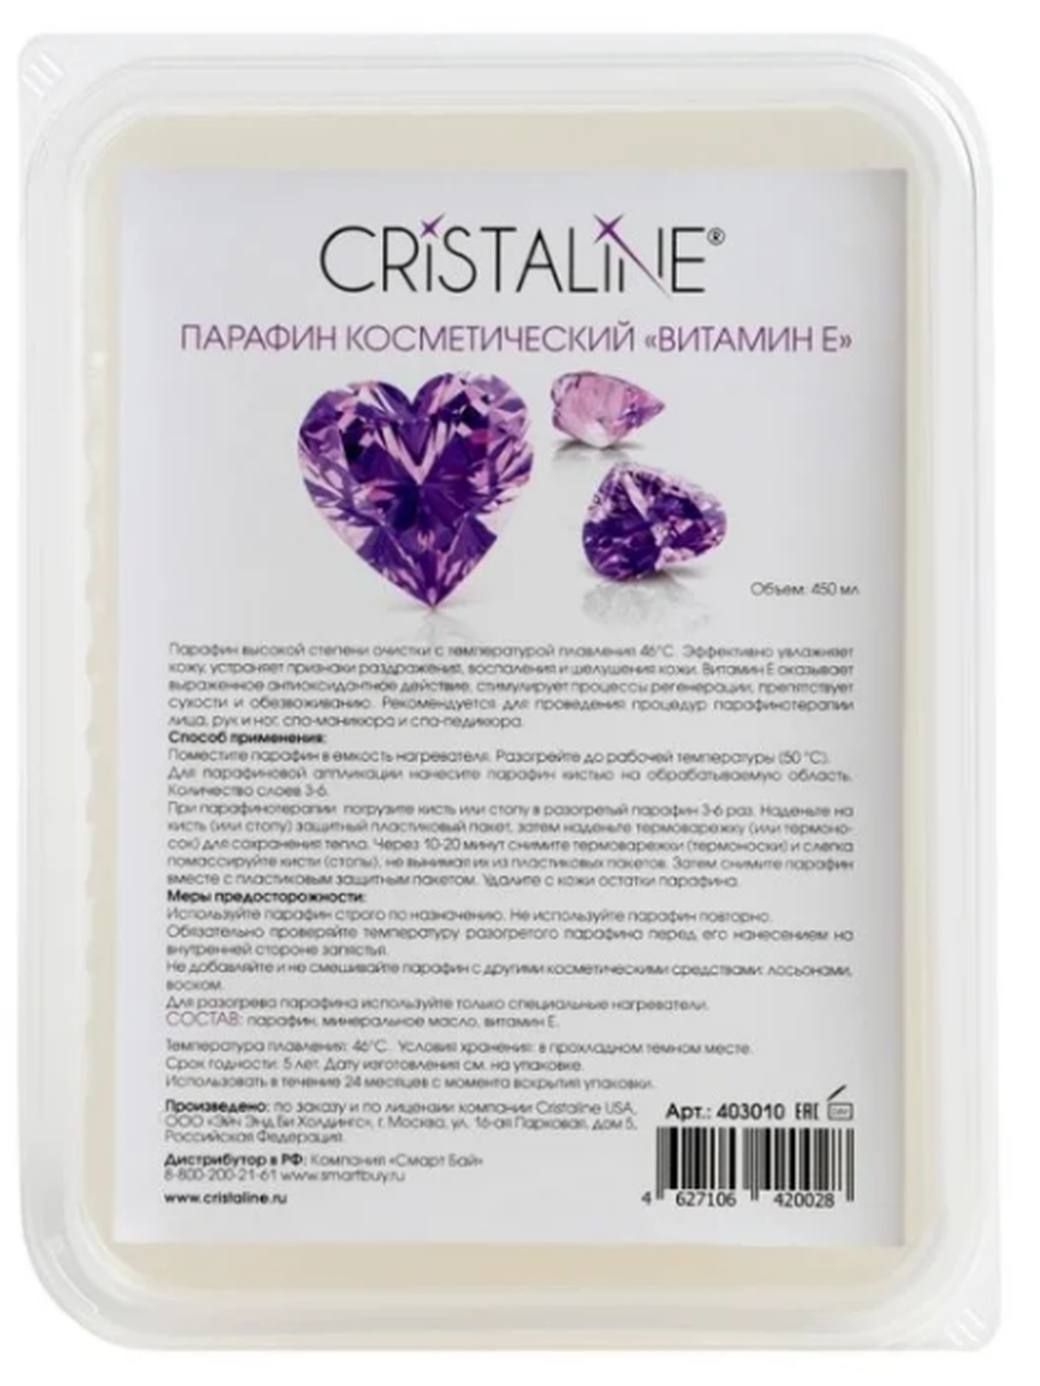 Парафин косметический Cristaline Витамин Е 450 мл фото